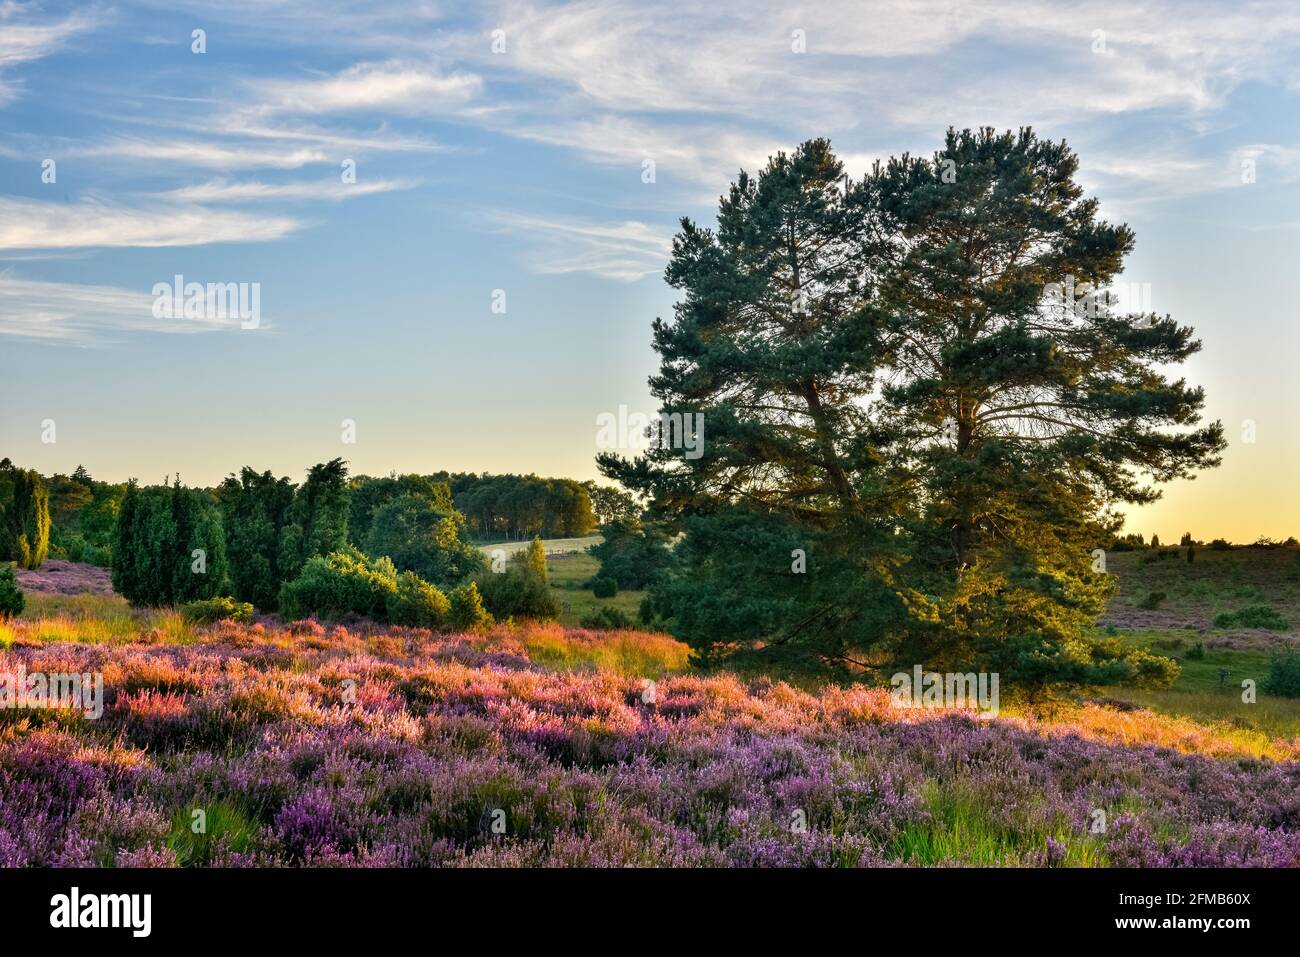 Tipico paesaggio di brughiera con erica e ginepro in fiore nella luce dell'ultima sera, Loeneburg Heath, bassa Sassonia, Germania Foto Stock